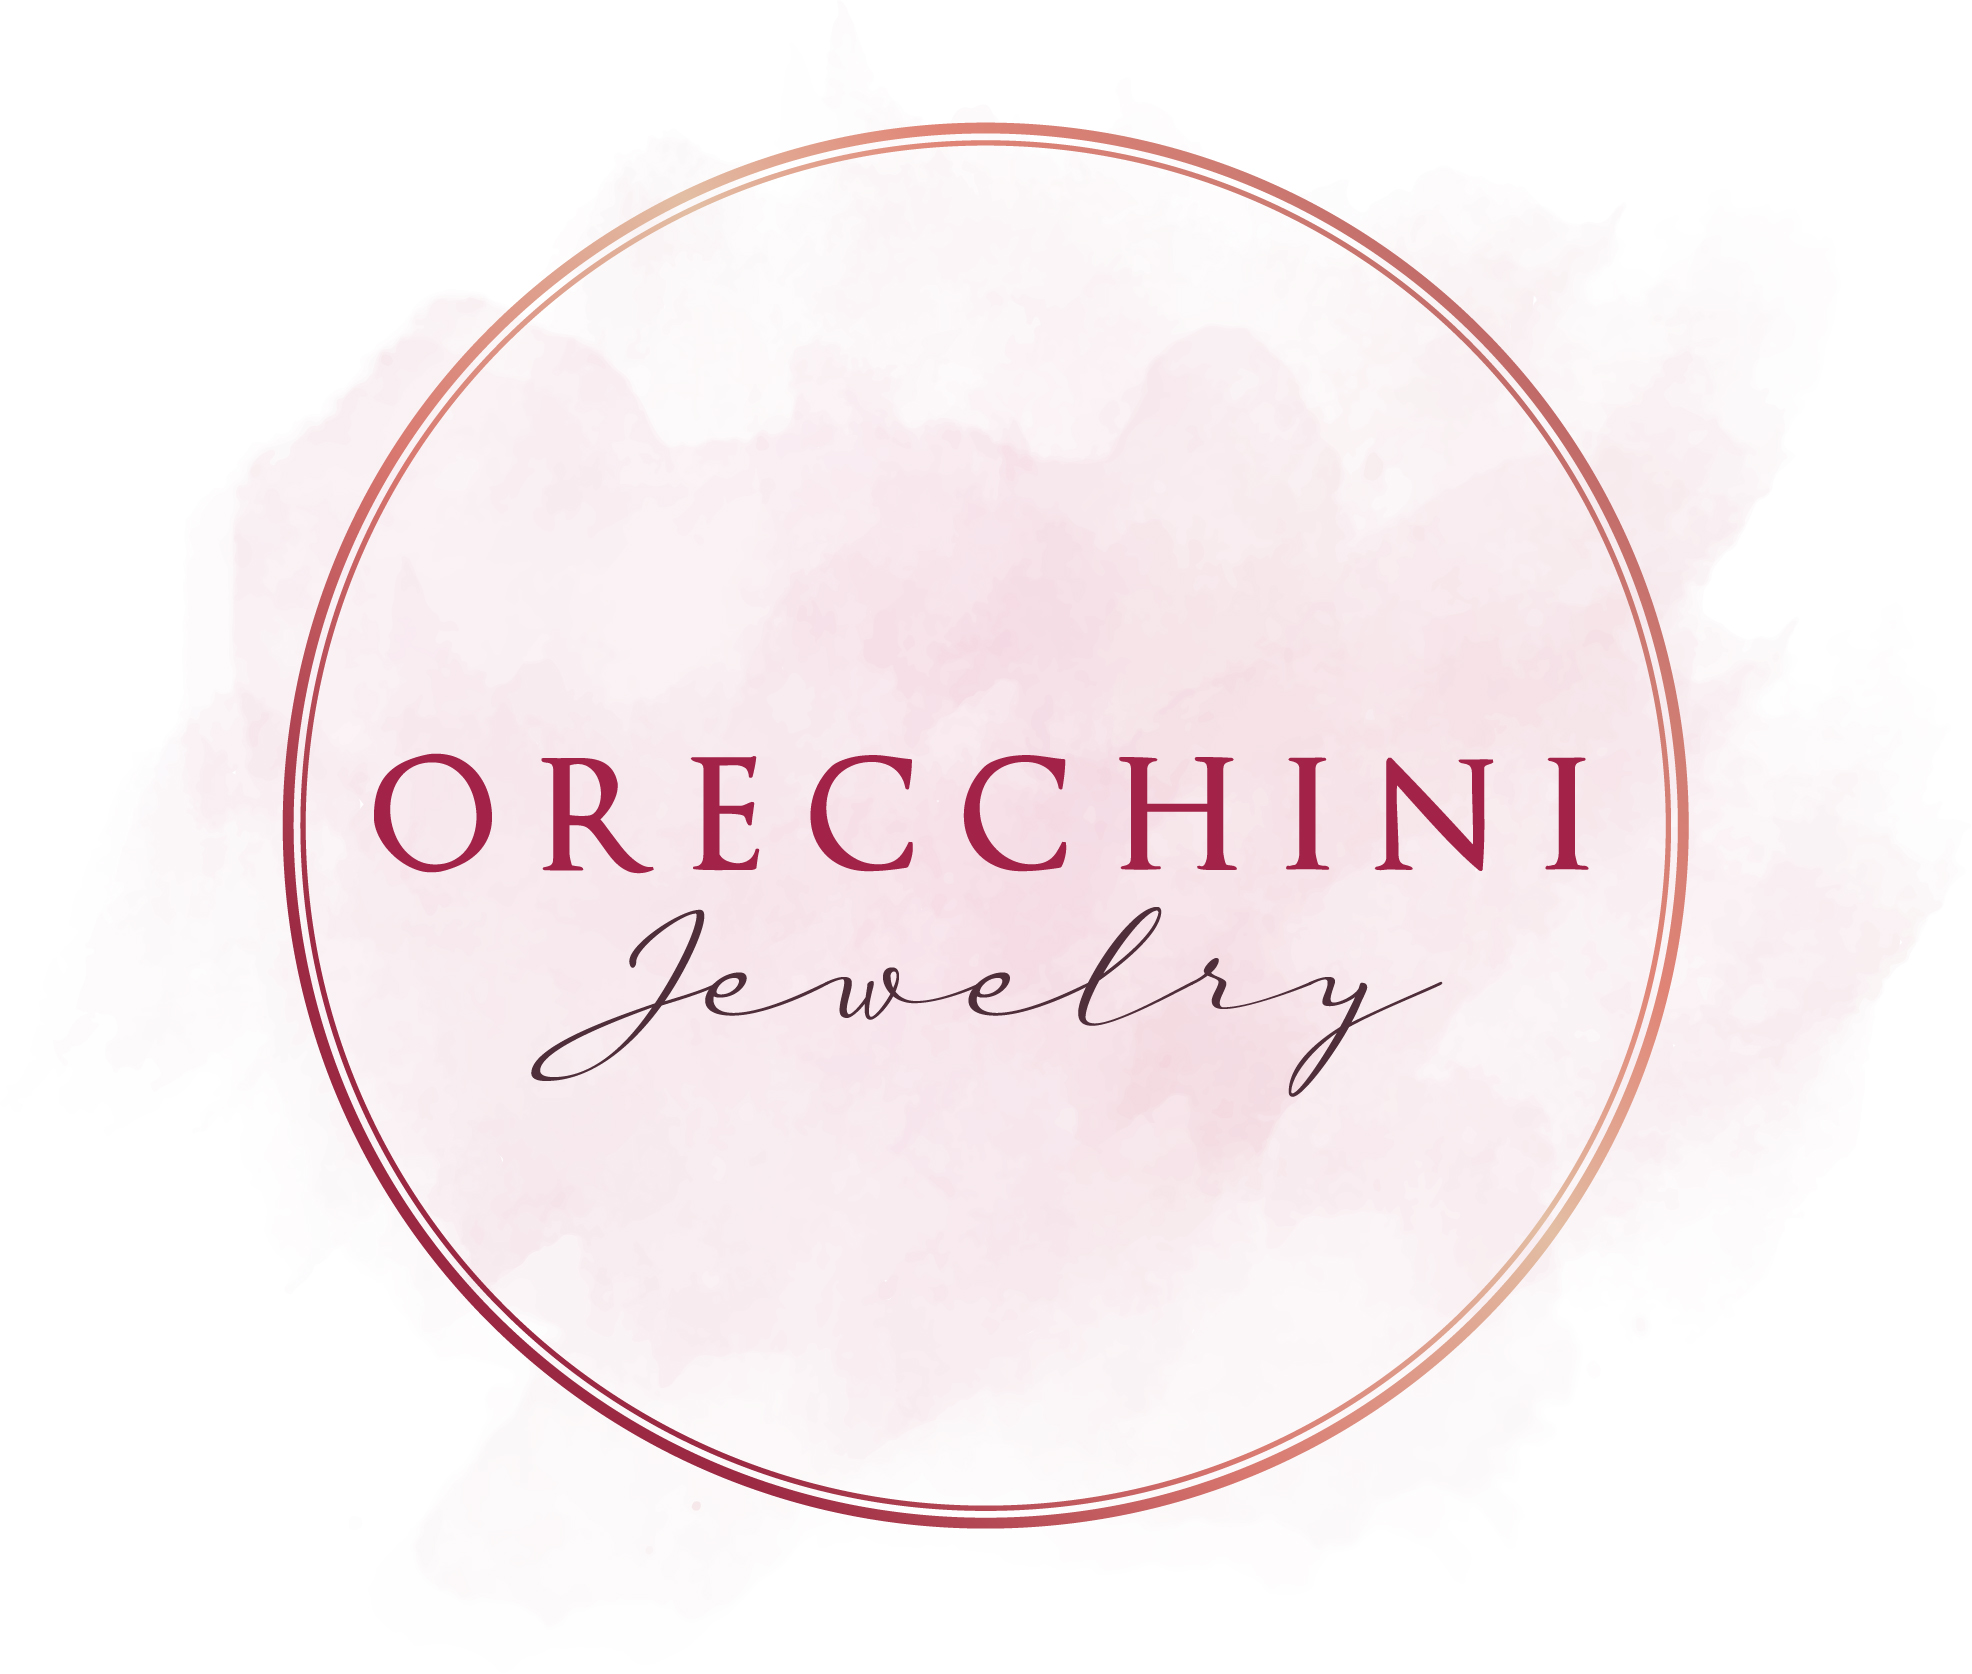 Bezoek Orecchini